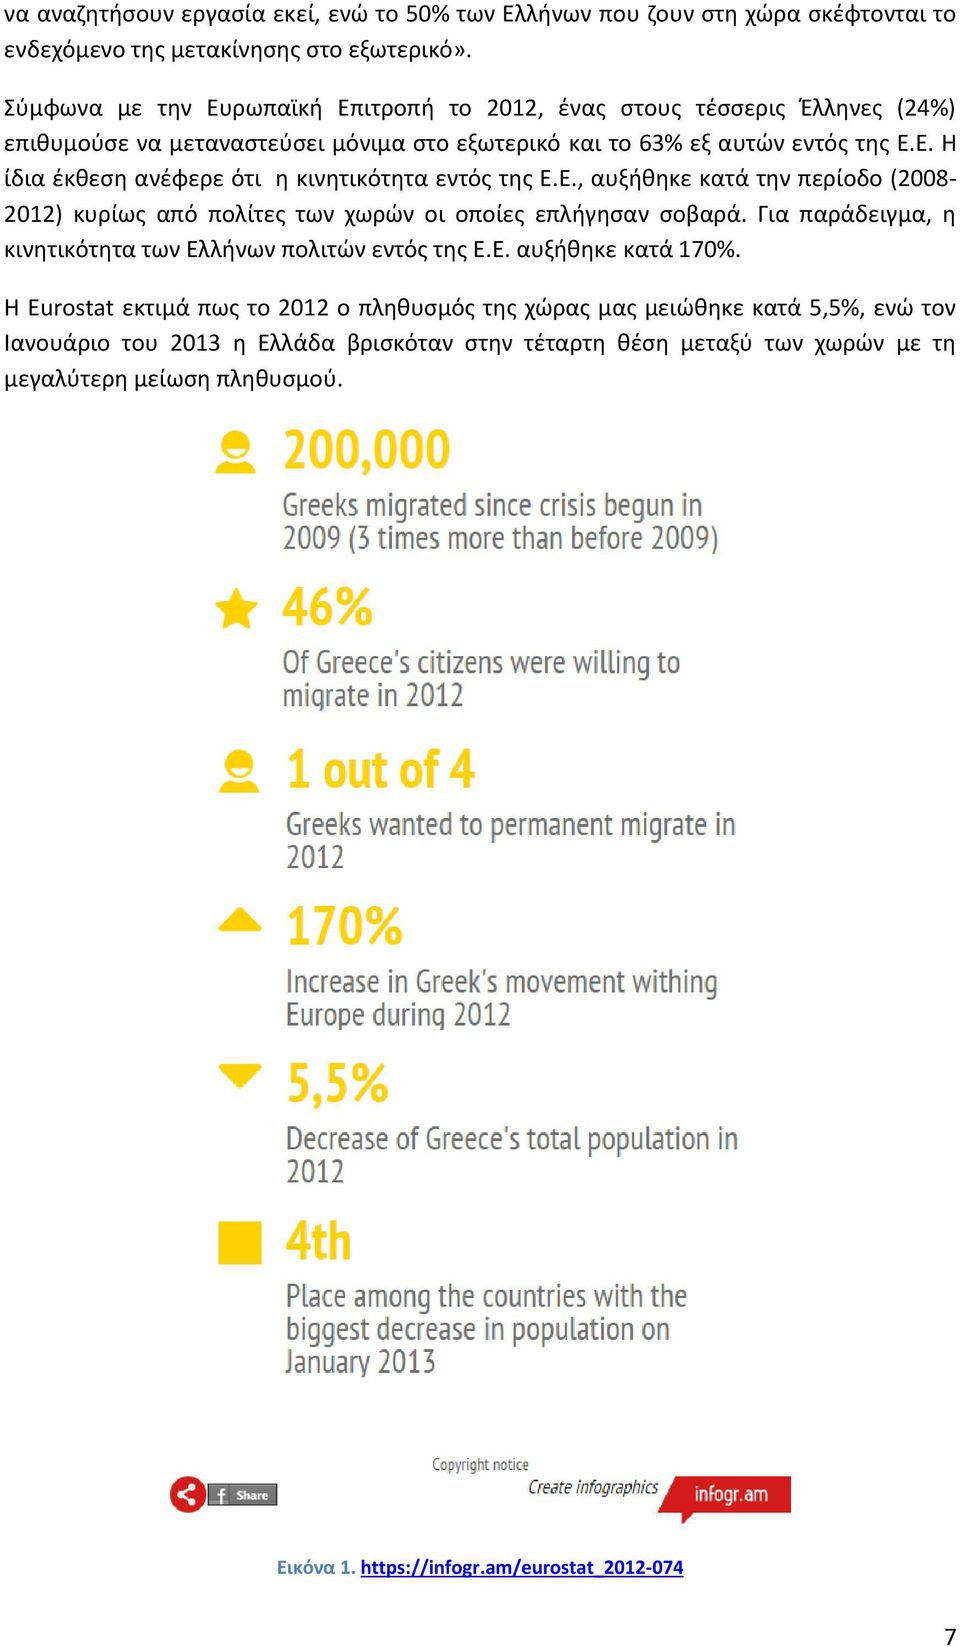 Ε., αυξήθηκε κατά την περίοδο (2008-2012) κυρίως από πολίτες των χωρών οι οποίες επλήγησαν σοβαρά. Για παράδειγμα, η κινητικότητα των Ελλήνων πολιτών εντός της Ε.Ε. αυξήθηκε κατά 170%.